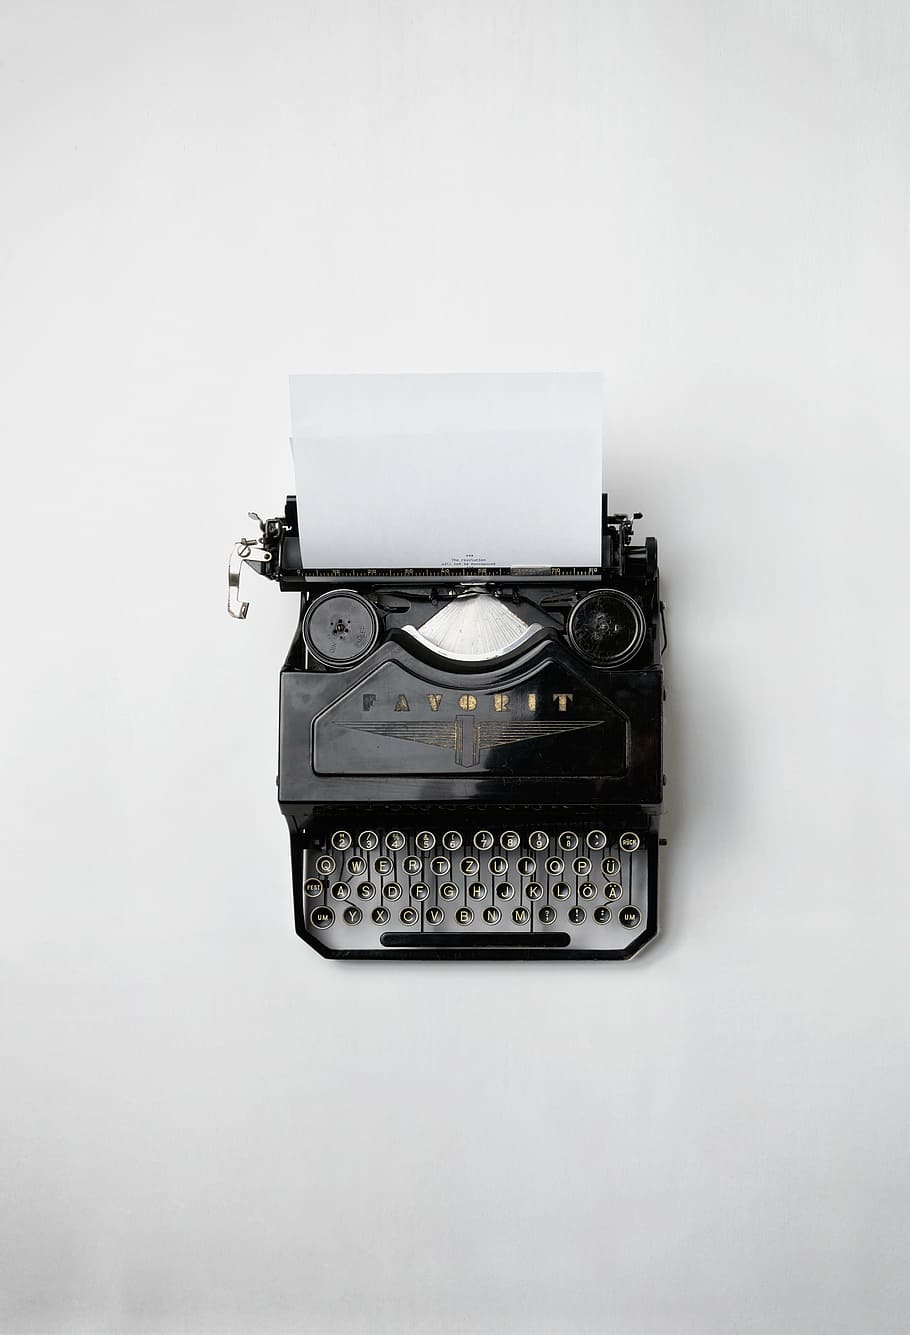 negro, máquina de escribir, blanco, superficie, impreso, papel, antiguo, vintage, favorit, letras